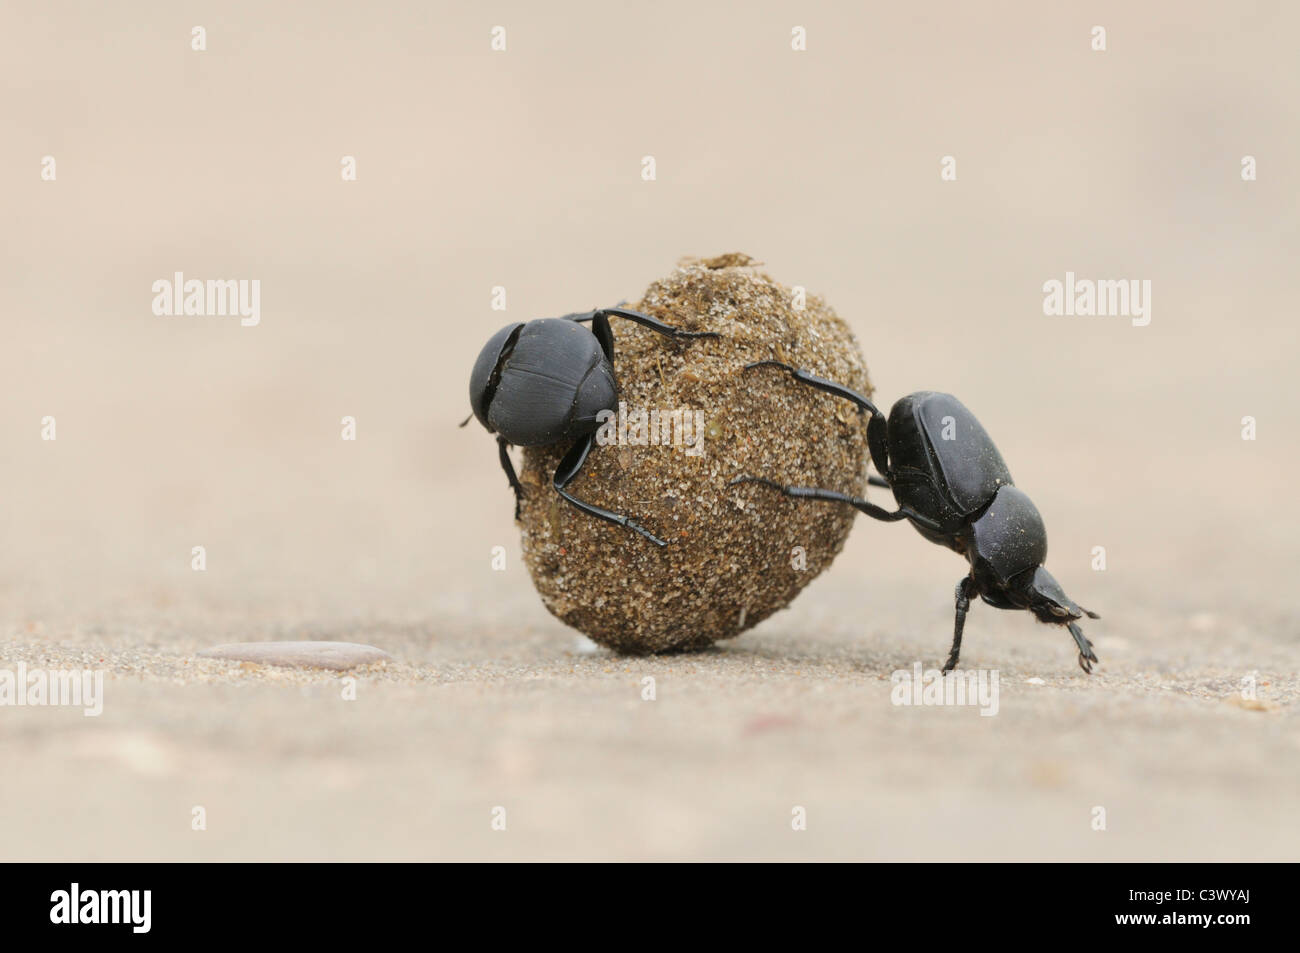 Escarabajos del estiércol (Scarabaeinae), adultos rodando la bola de estiércol, Laredo, condado Webb, el sur de Texas, EE.UU. Foto de stock